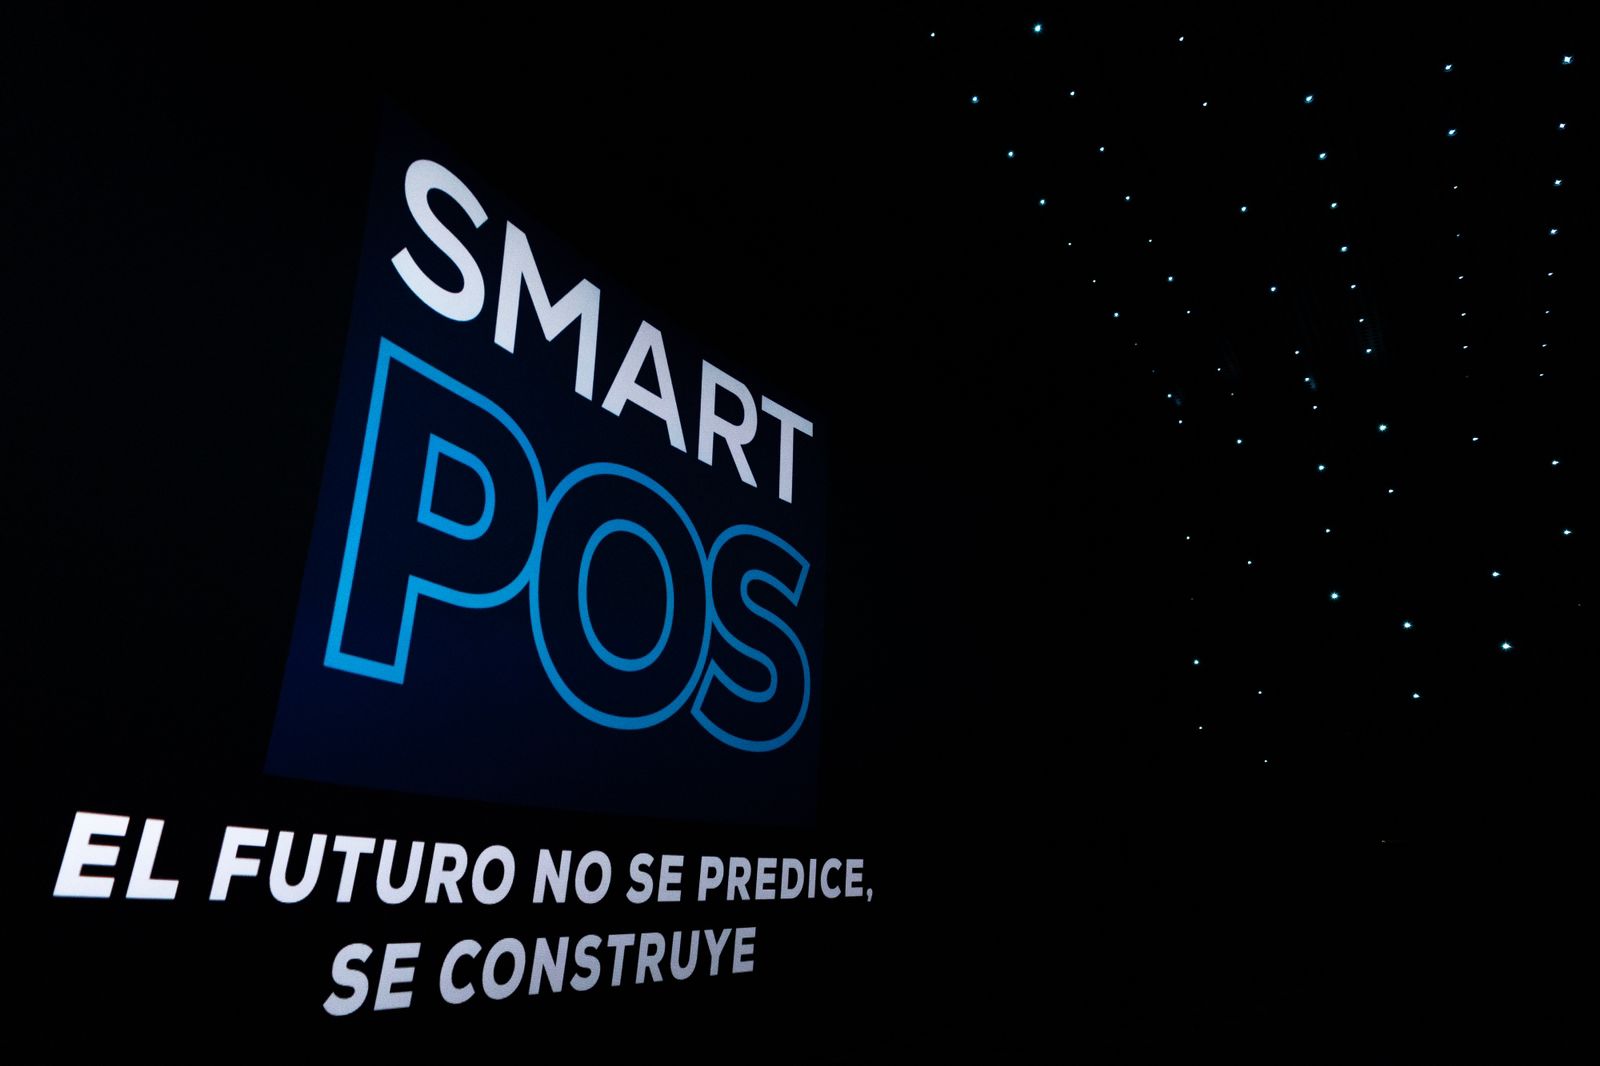 Con una disruptiva presentación, Silvana Ratti lanzó su propuesta de "ciudad inteligente" para la ciudad de Posadas imagen-6